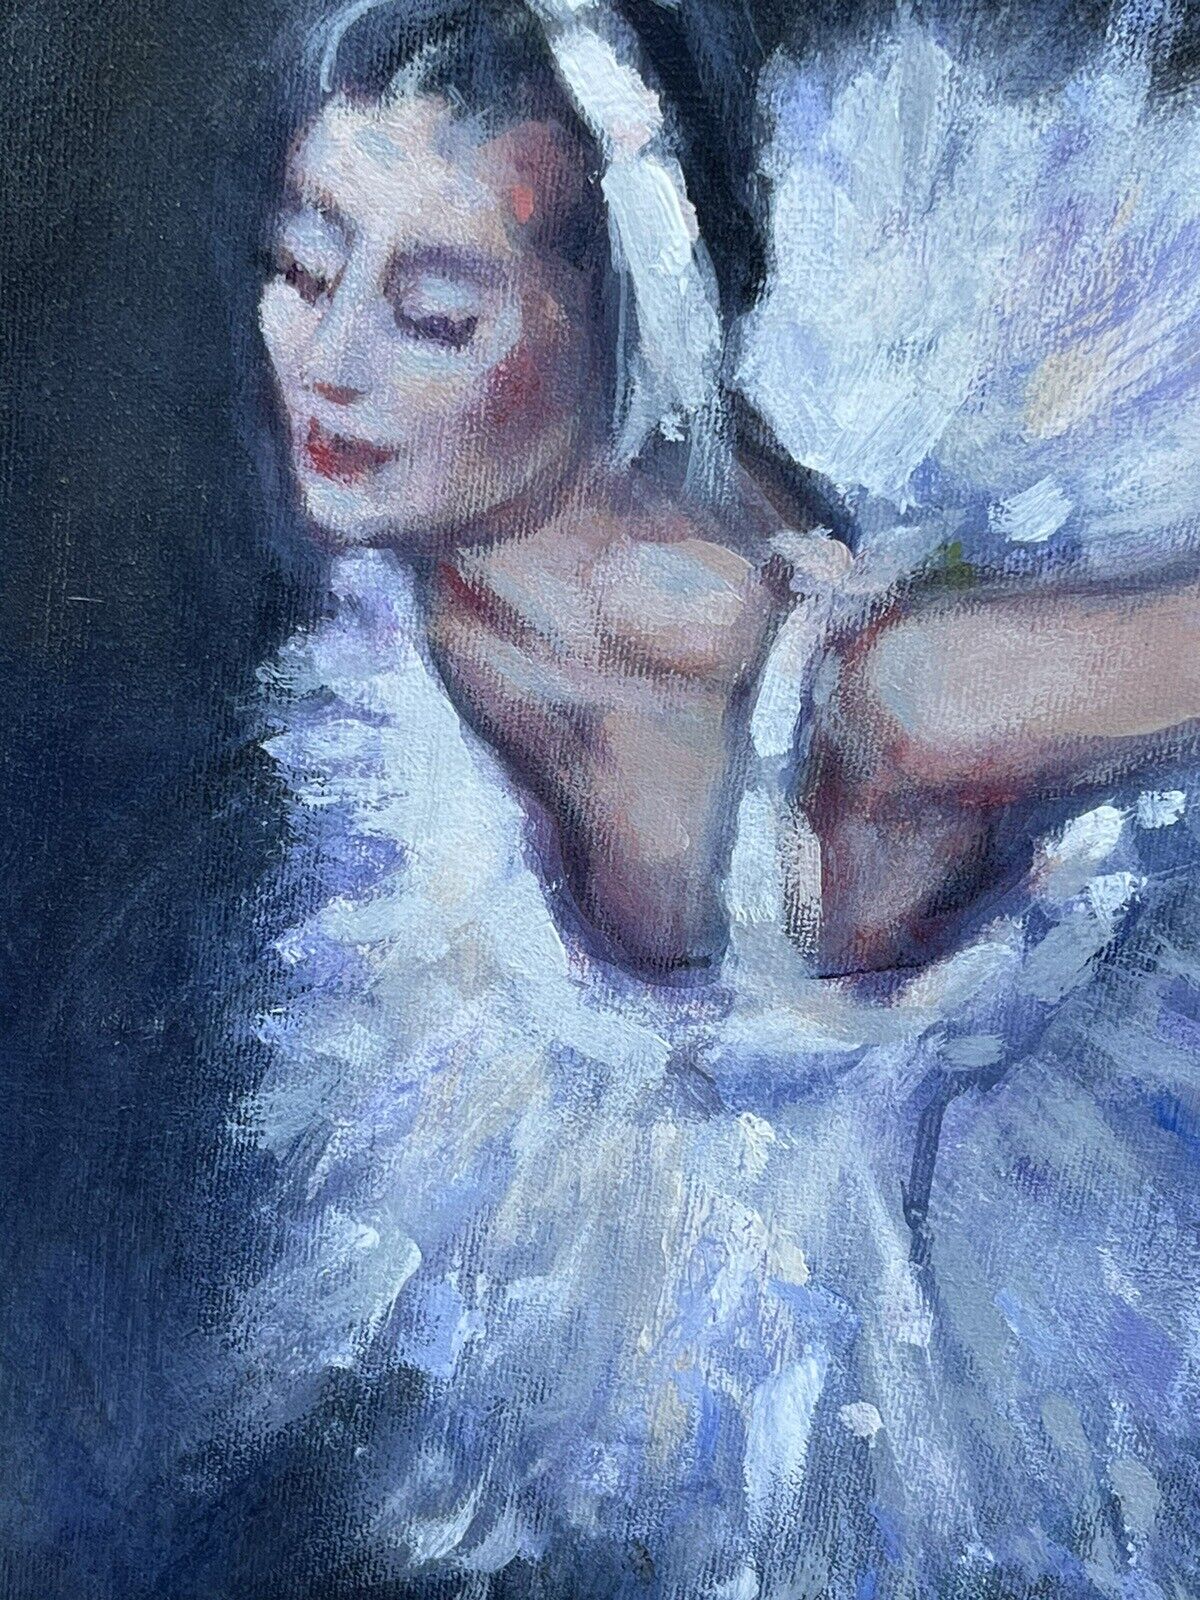 Ballerina. Dancer. Large  Oil On Canvas Signed Morris.